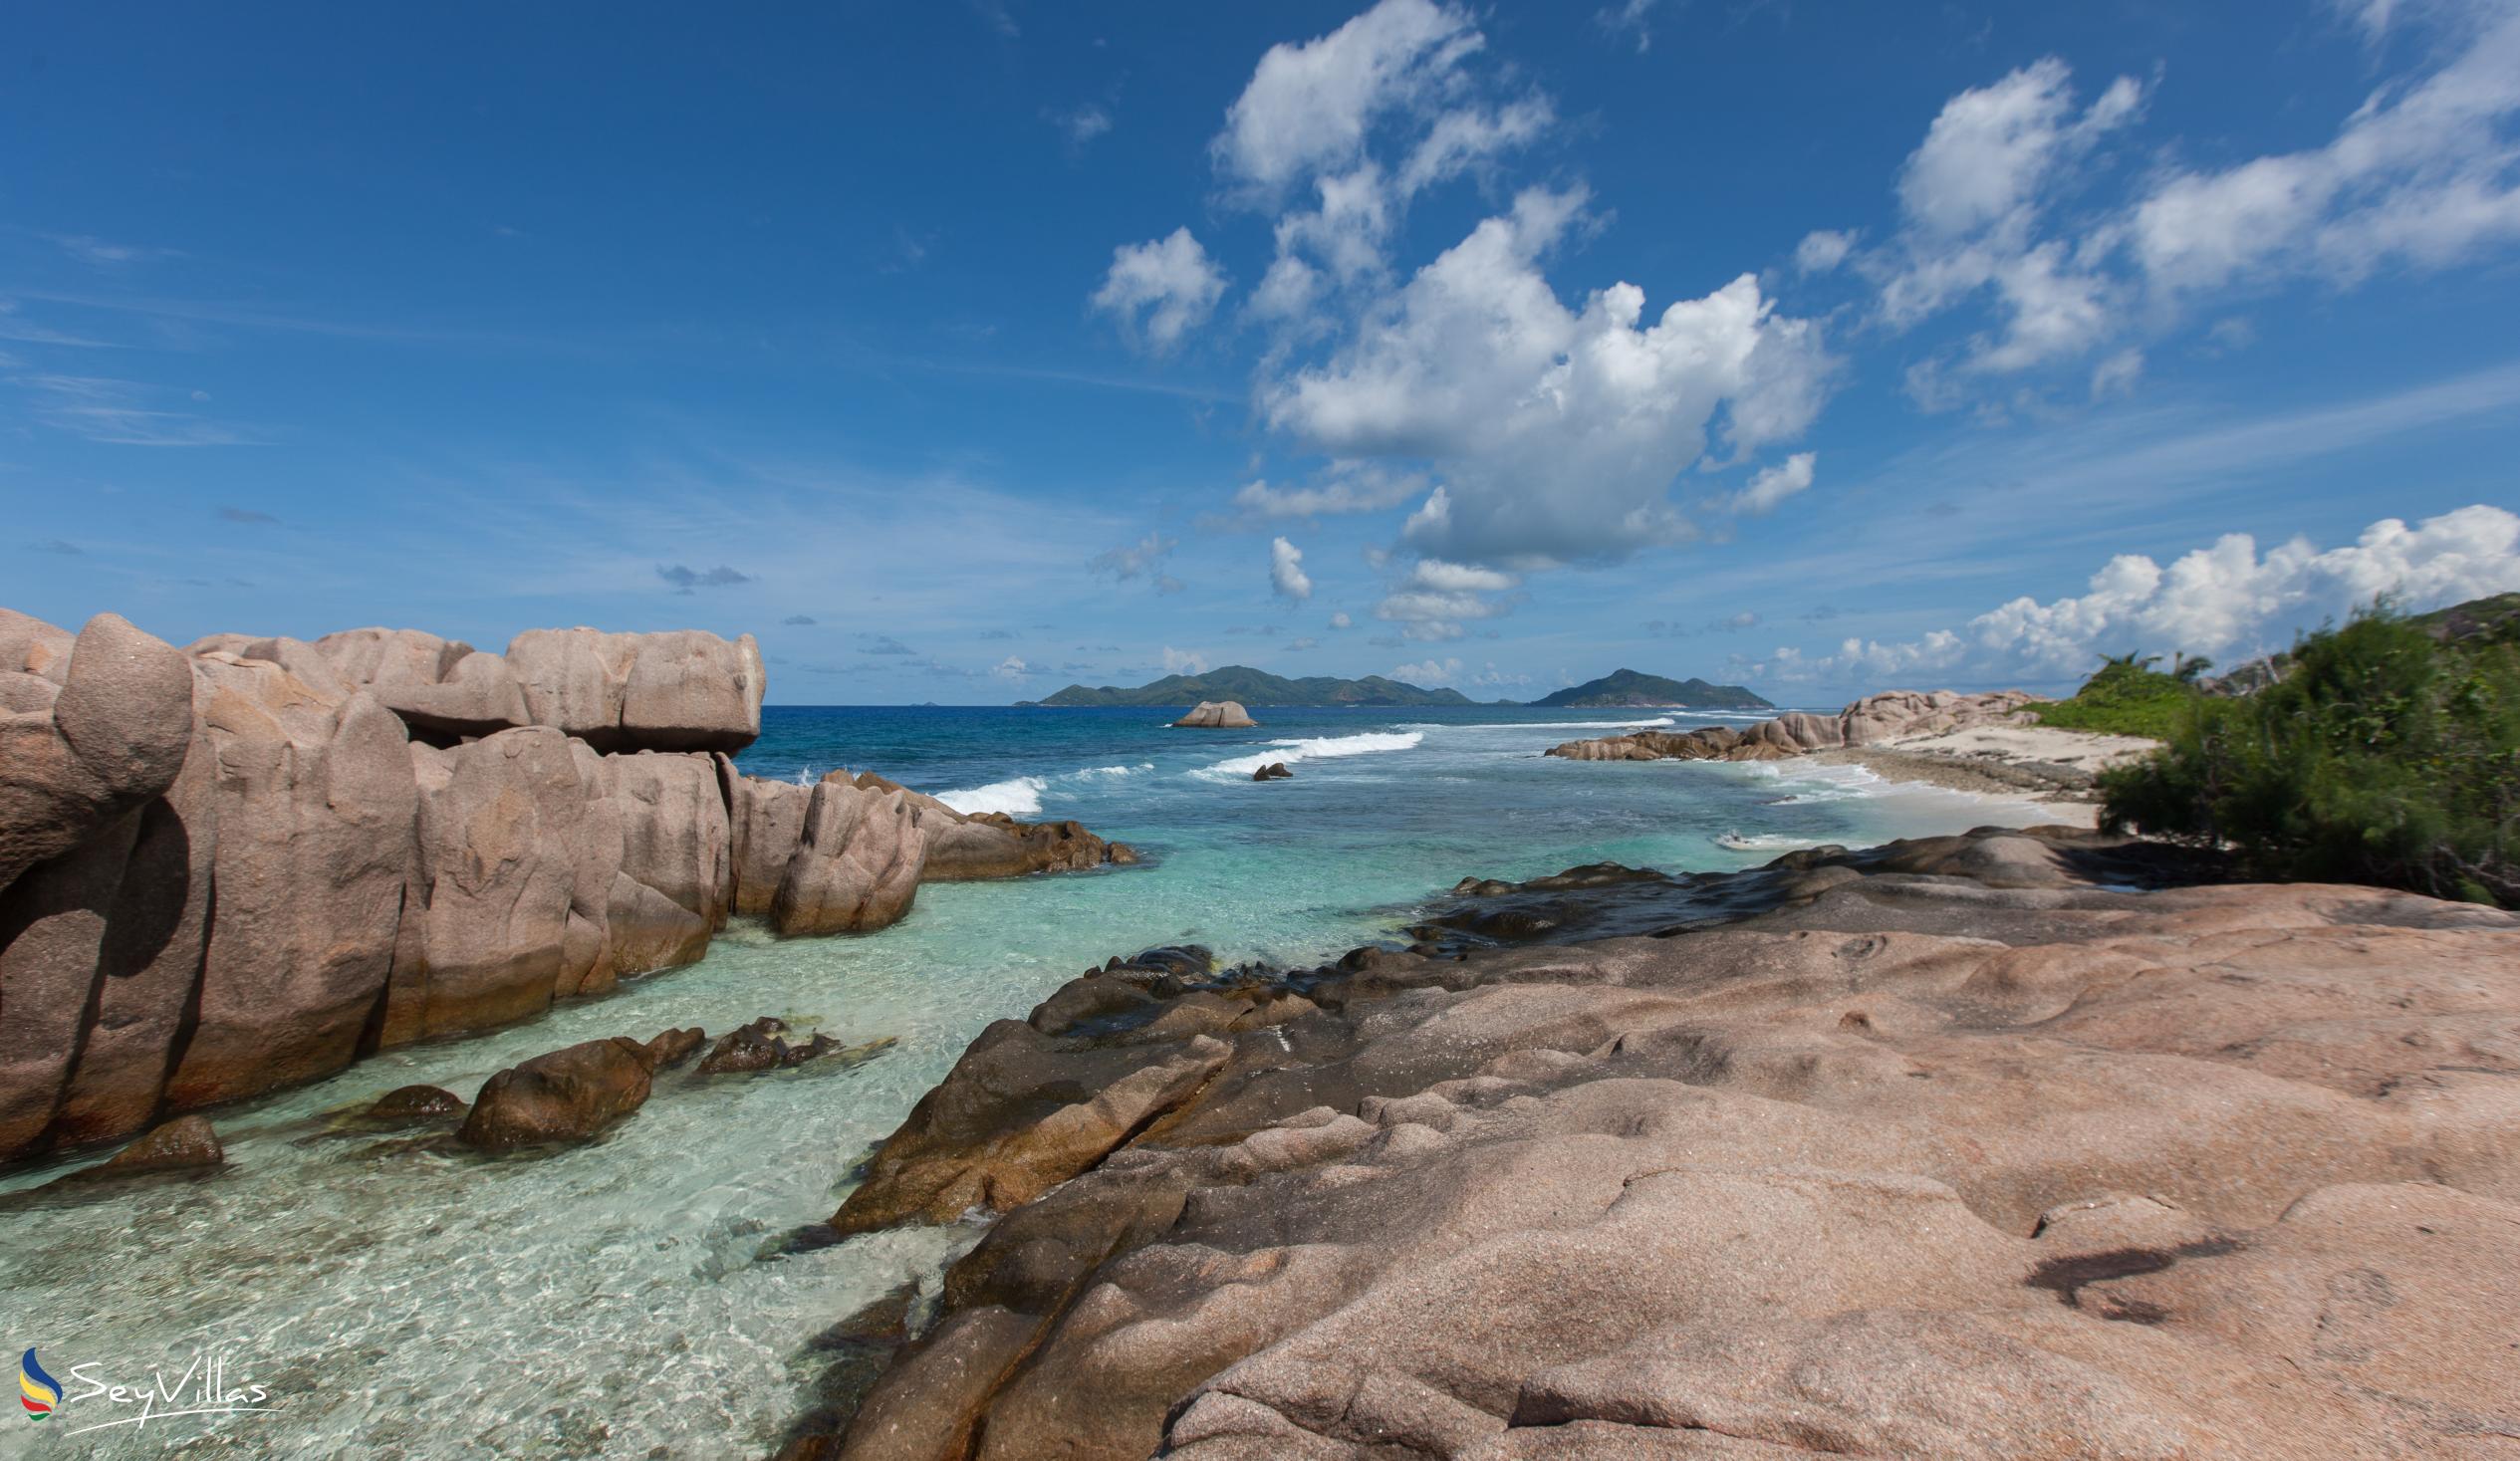 Photo 10: Anse aux Cèdres - La Digue (Seychelles)